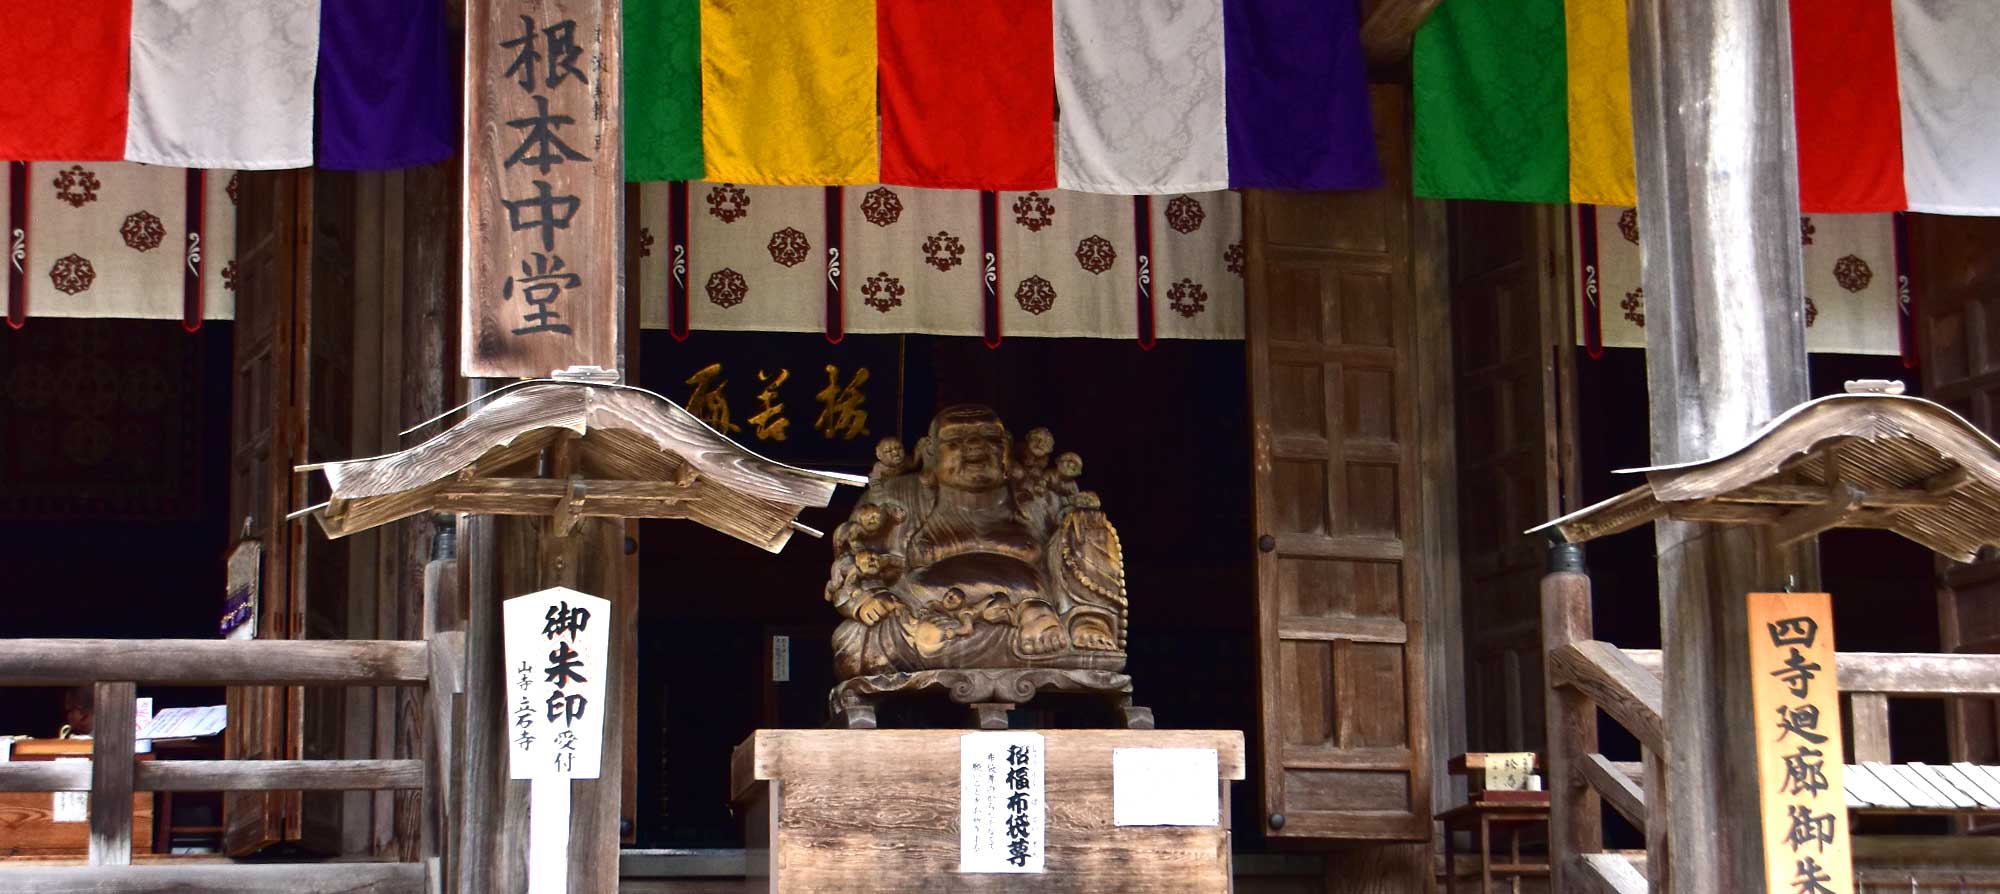 Божество в одном из залов в буддийском храме Риссякудзи в префектуре Ямагата